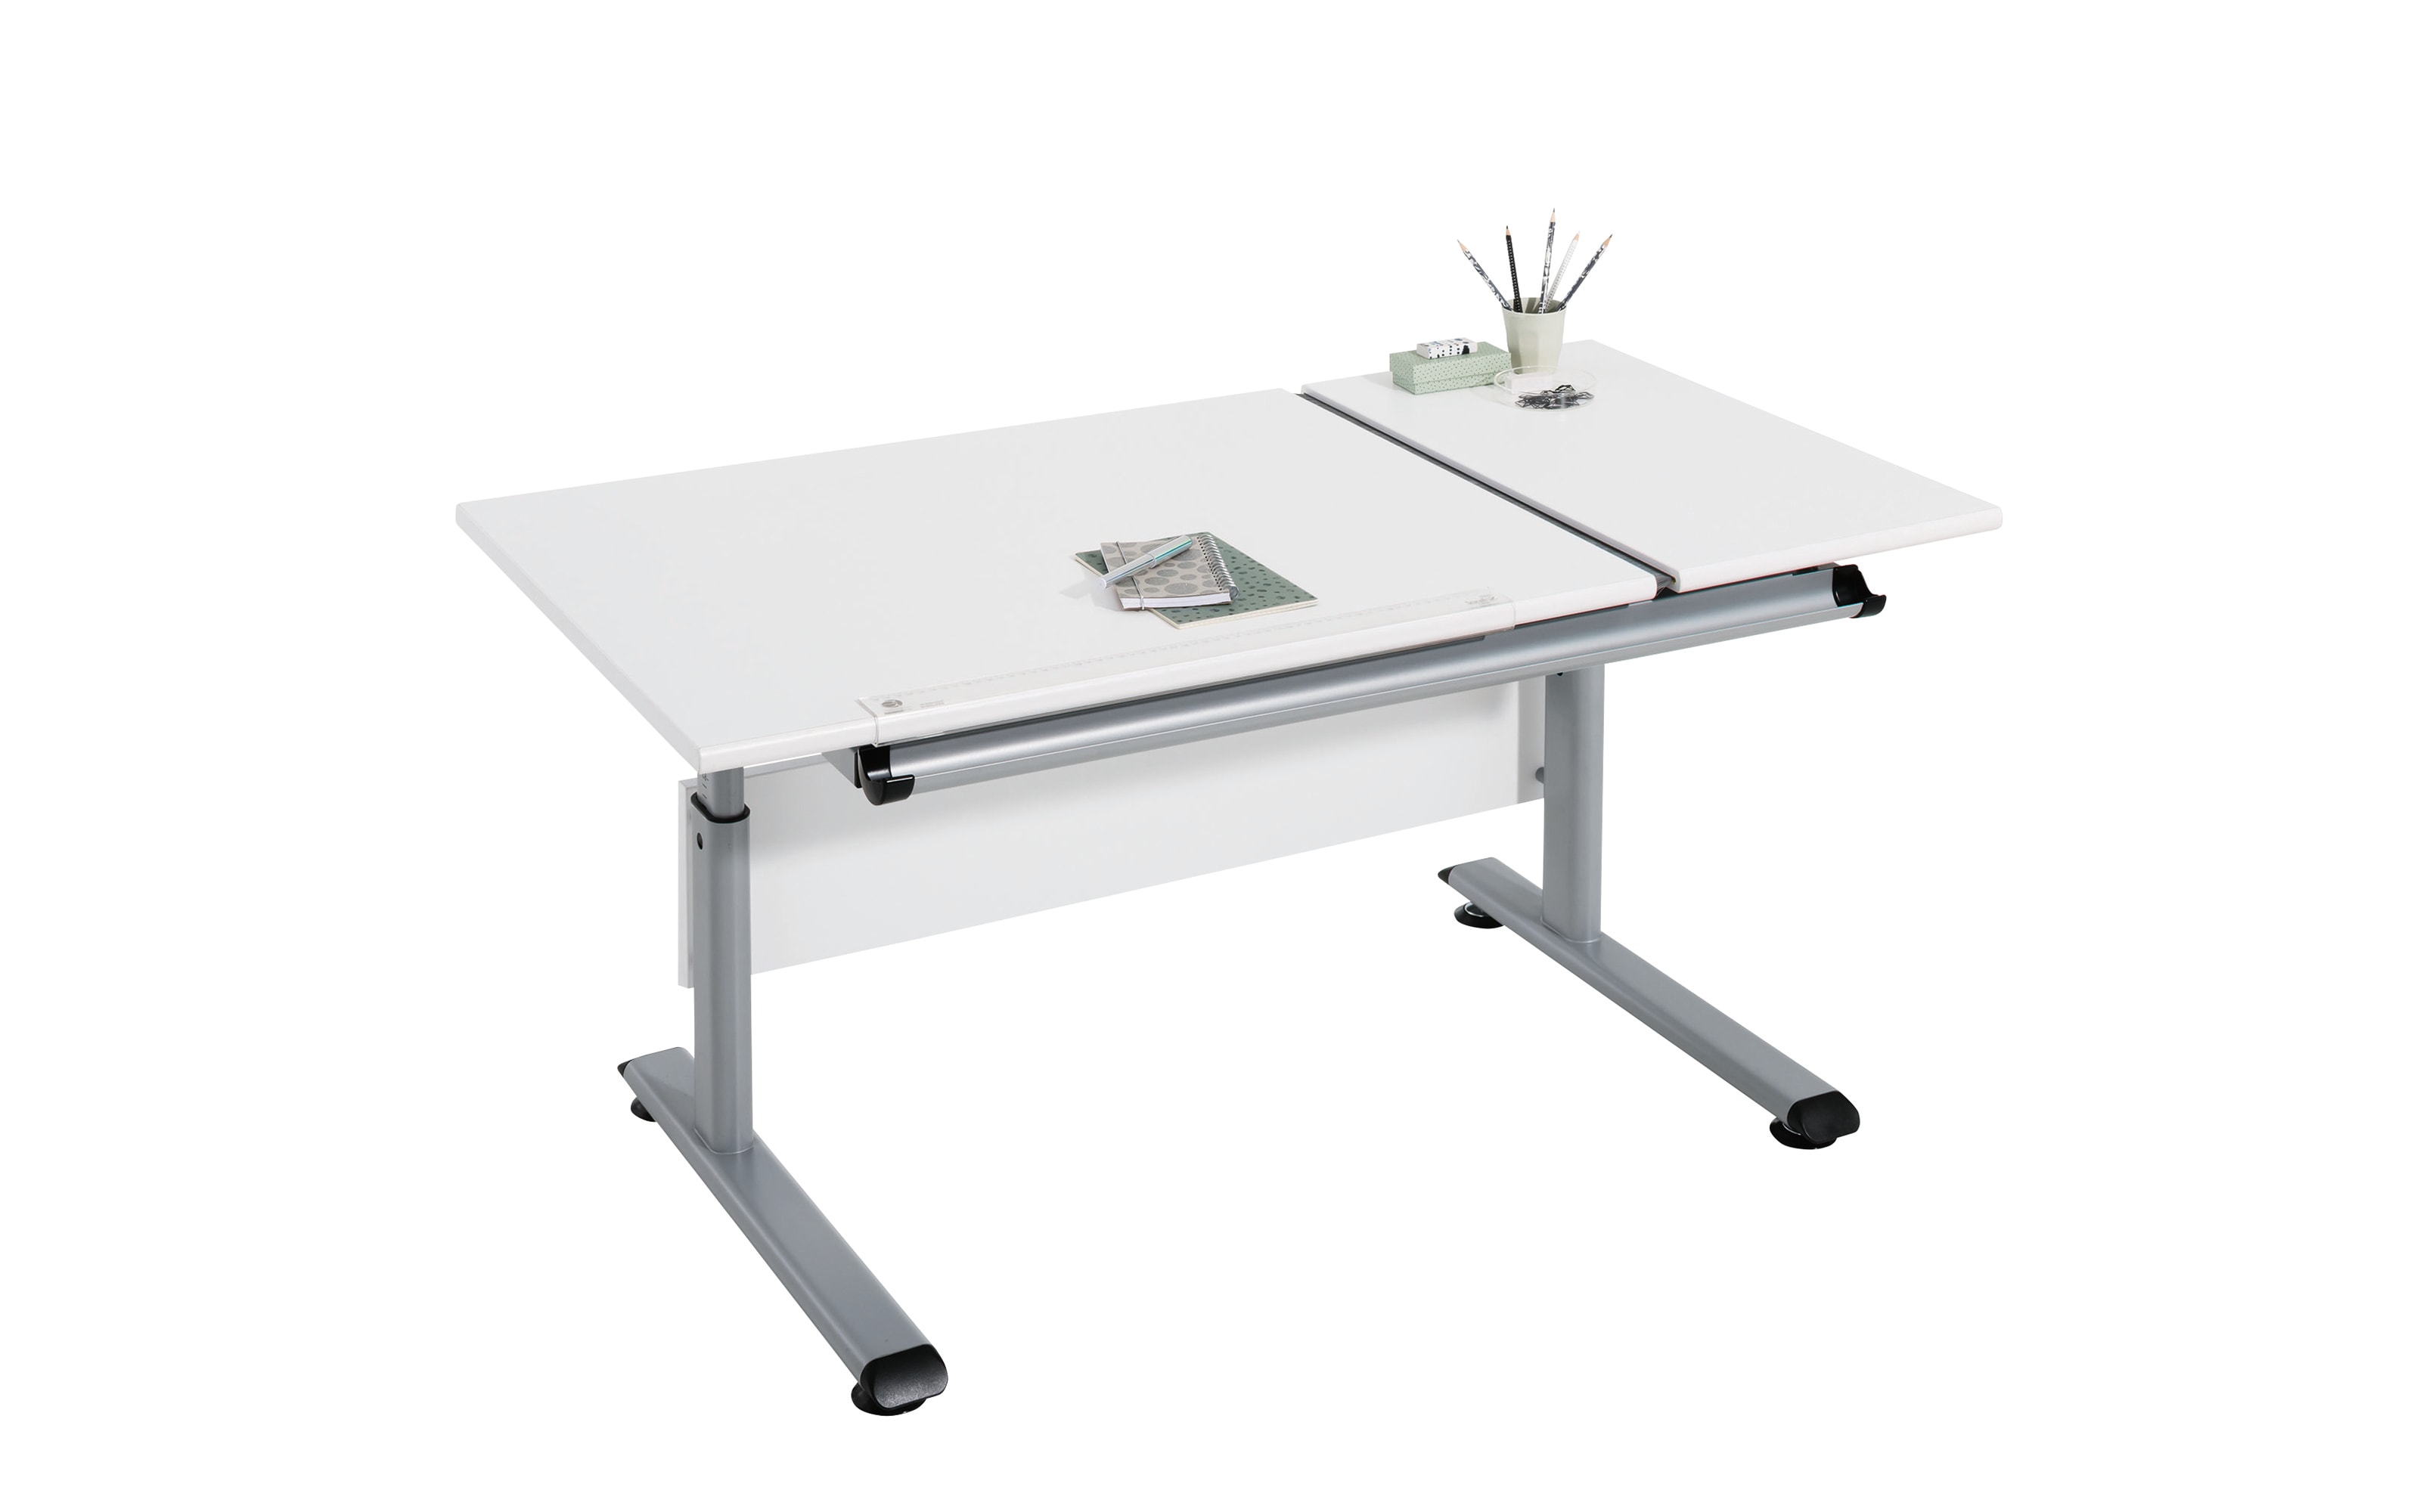 Schreibtisch Marco 2 GT in weiß/silber., Breite ca. 130 cm